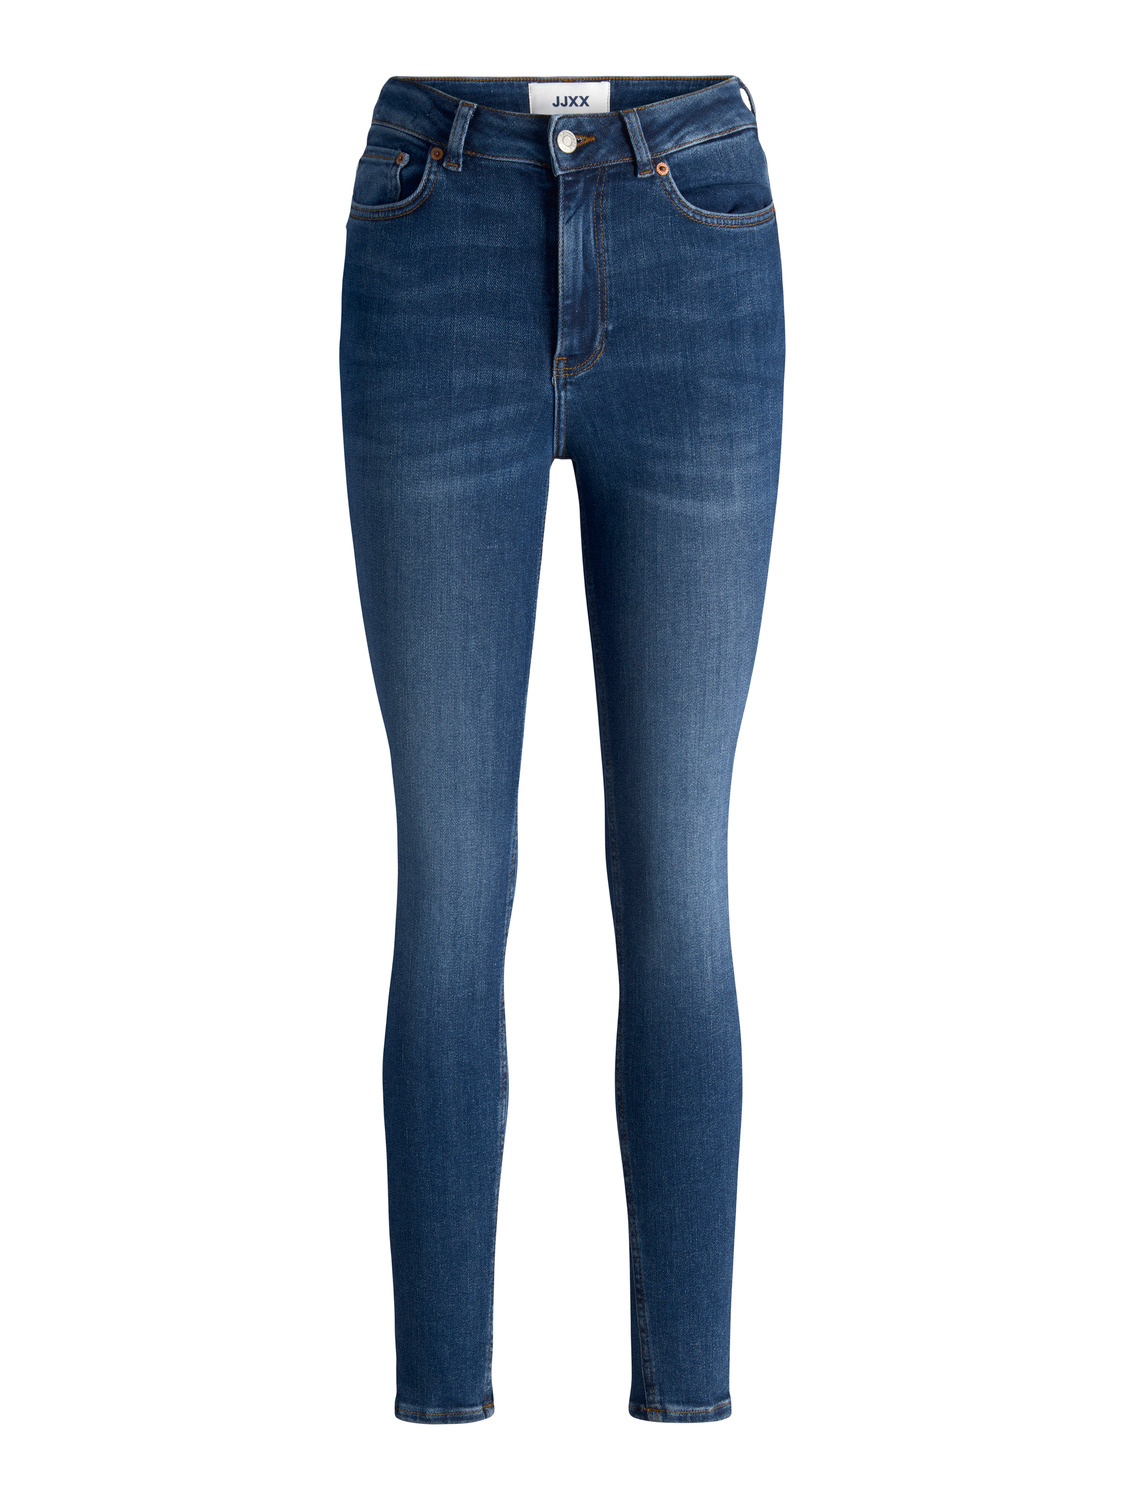 jjxx skinny jeans mit hoher taille frau vienna bleu donna